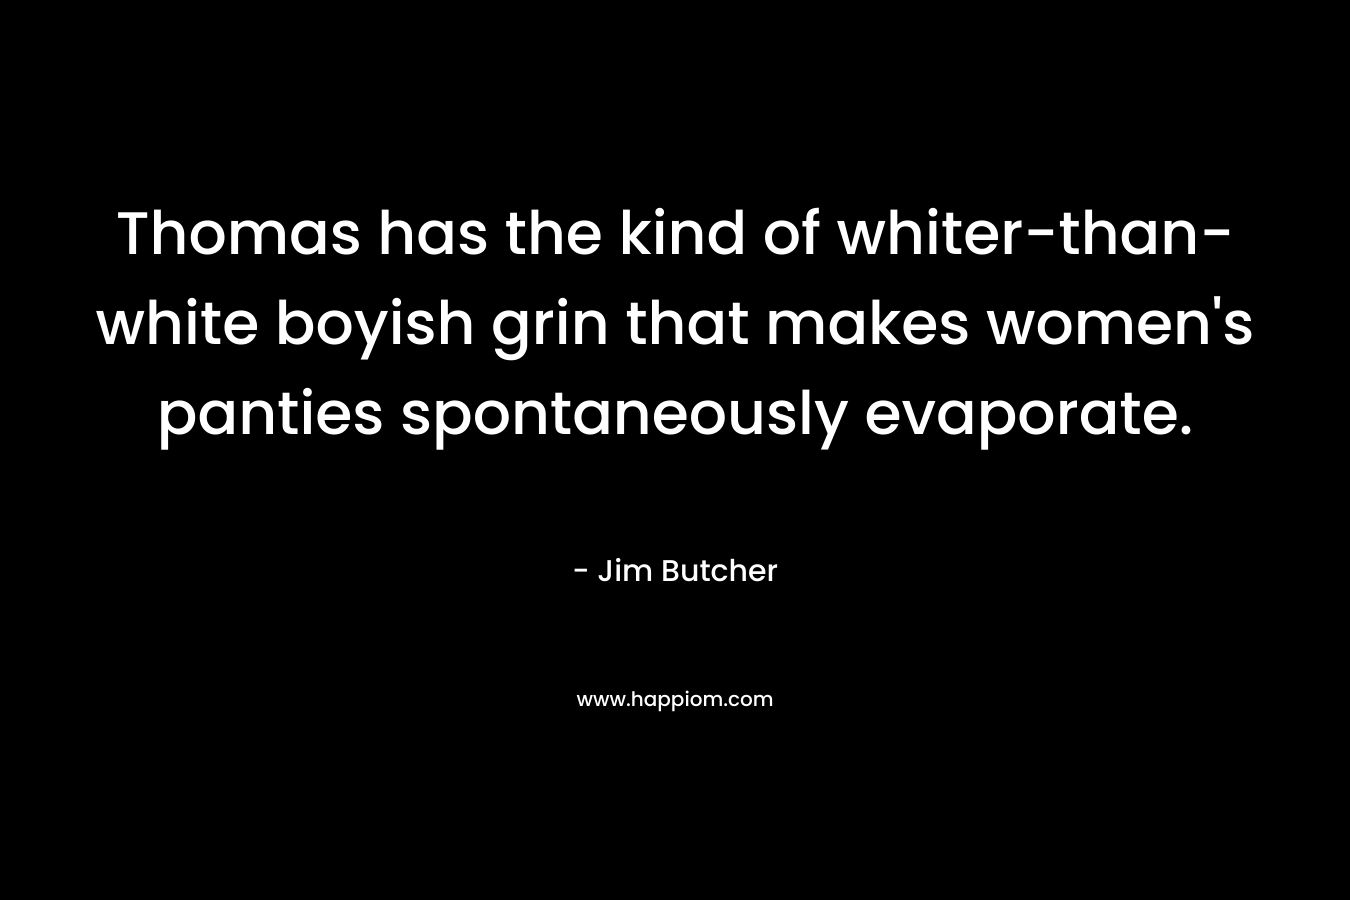 Thomas has the kind of whiter-than-white boyish grin that makes women’s panties spontaneously evaporate. – Jim Butcher